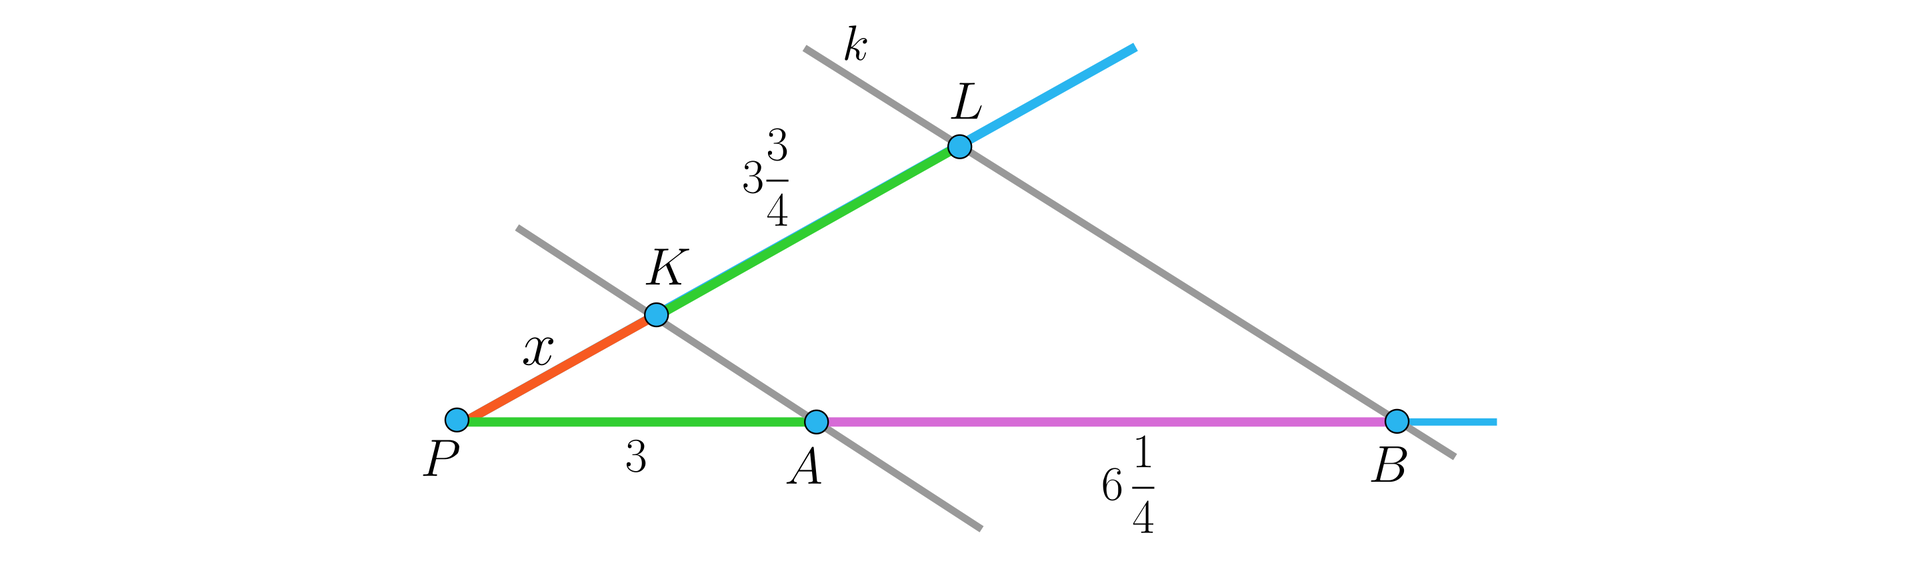 Ilustracja przedstawia kąt ostry rozpięty między dwiema półprostymi o wspólnym końcu w punkcie P.  Jedno z ramion jest ukośne, drugie poziome. Ramiona przecinają dwie ukośne proste równoległe. Pierwsza prosta przecina górne ramię w punkcie K i dolne w punkcie A. Druga prosta przecina górne ramię w punkcie L, a dolne w punkcie B. Proste te wyznaczają następujące odcinki: na górnym ramieniu kąta mamy: P K o długości x oraz K L o długości 3 i trzy czwarte, na dolnym ramieniu mamy: P A o długości 3 oraz A B o długości 6 i jedna czwarta.